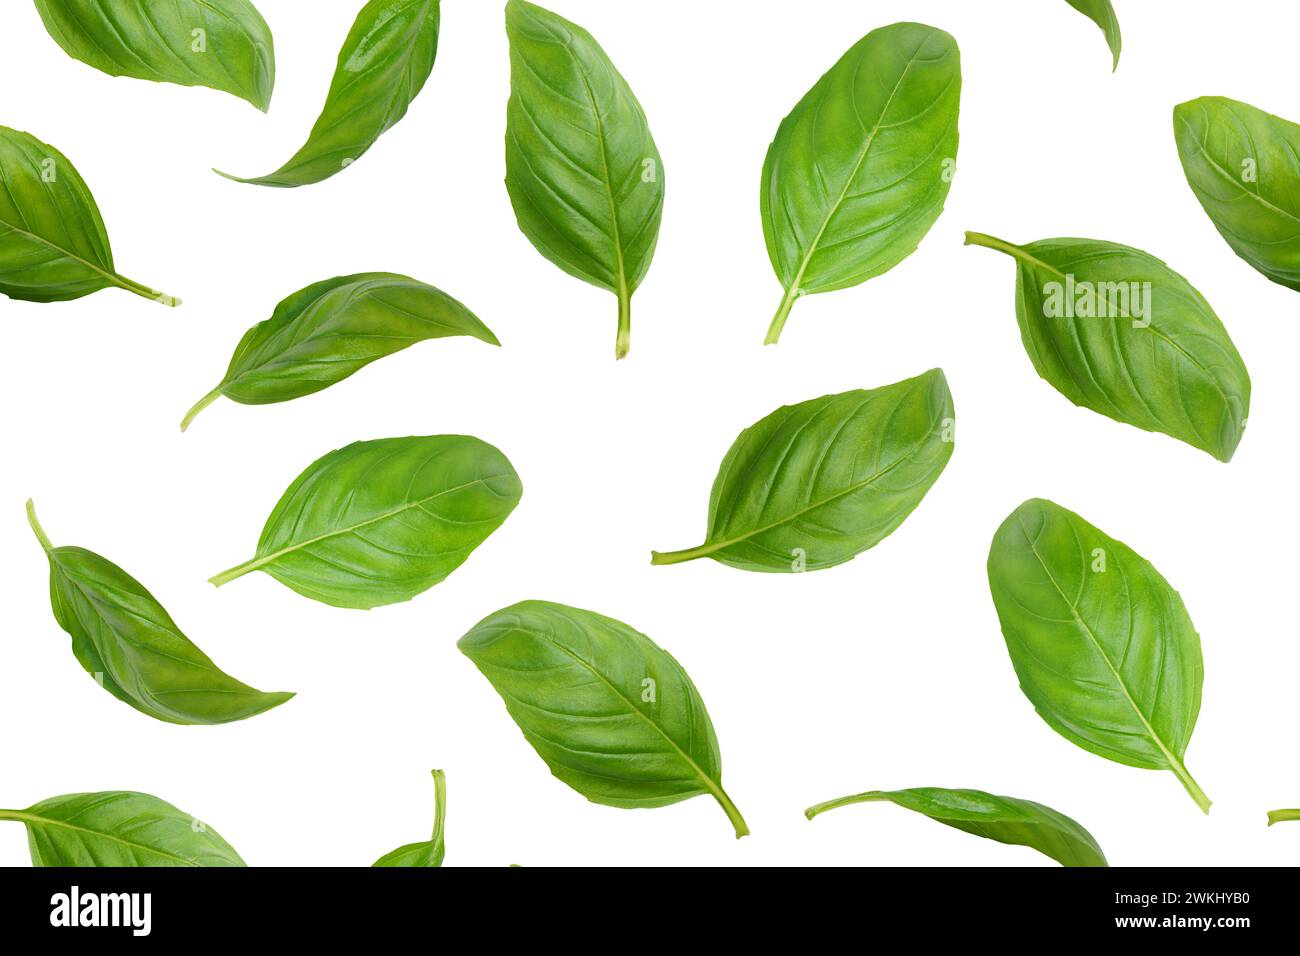 Feuilles de basilic organique vert frais volantes, isolées sur fond blanc. Lévitation alimentaire créative, modèle sans couture pour la conception. Ingrédient, épice pour co Banque D'Images